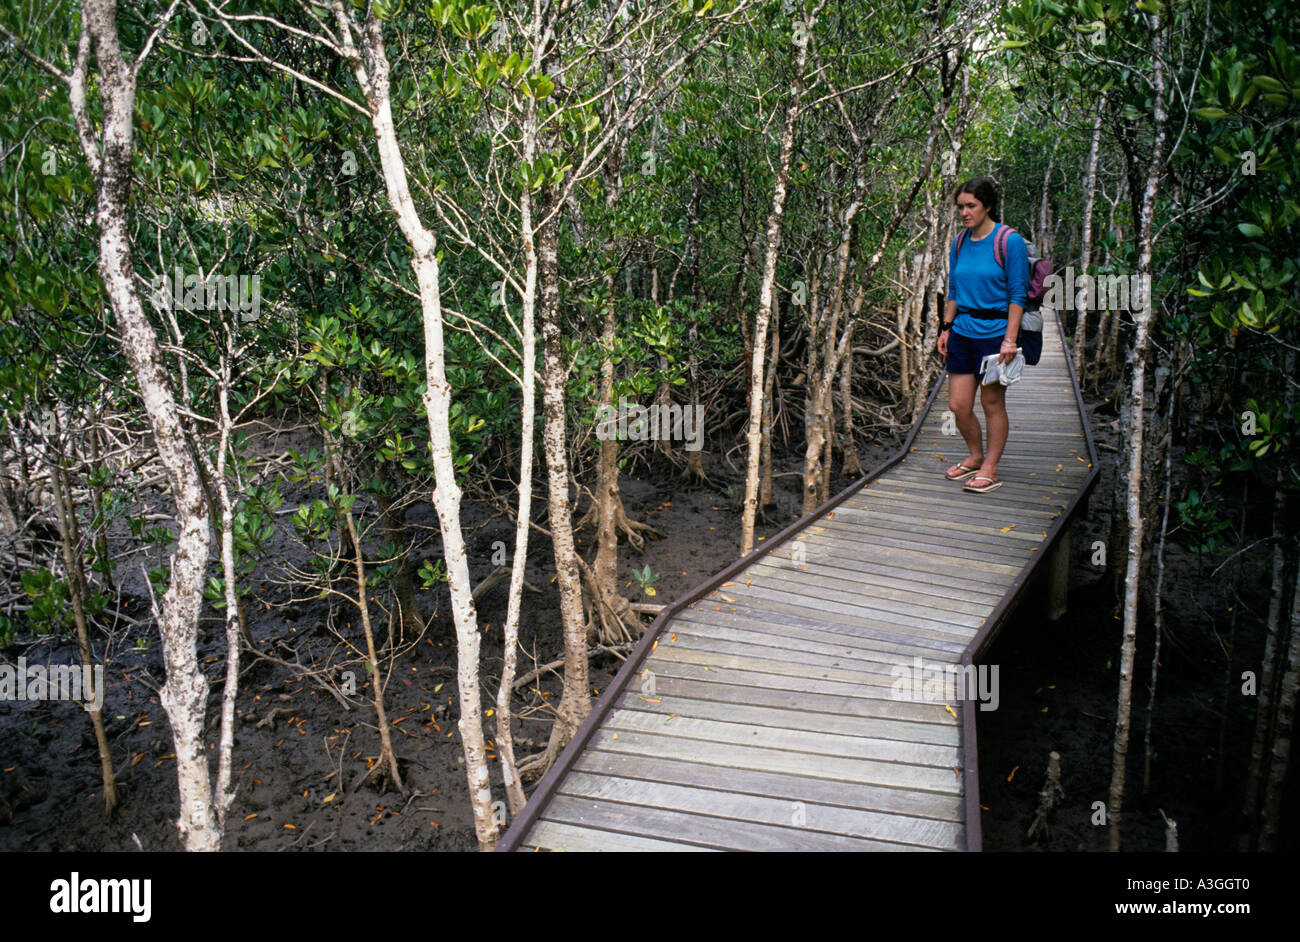 Promenade touristique sur les hauteurs boisées de la zone de mangrove Kanunda Queensland Australie Banque D'Images